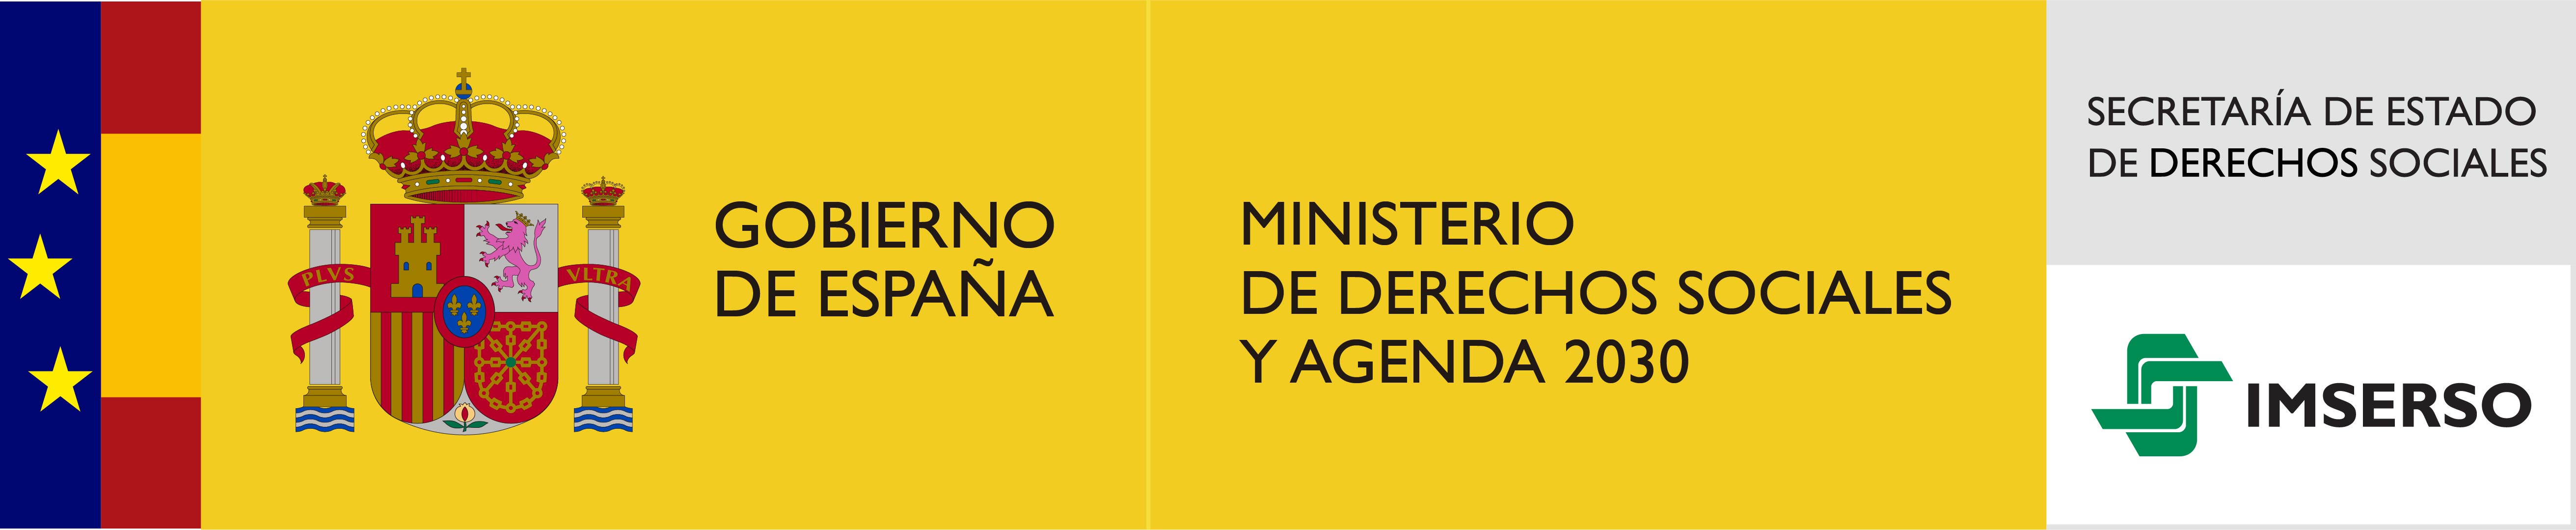 Logotipo del Ministerio de sanidad, servicios sociales e igualdad